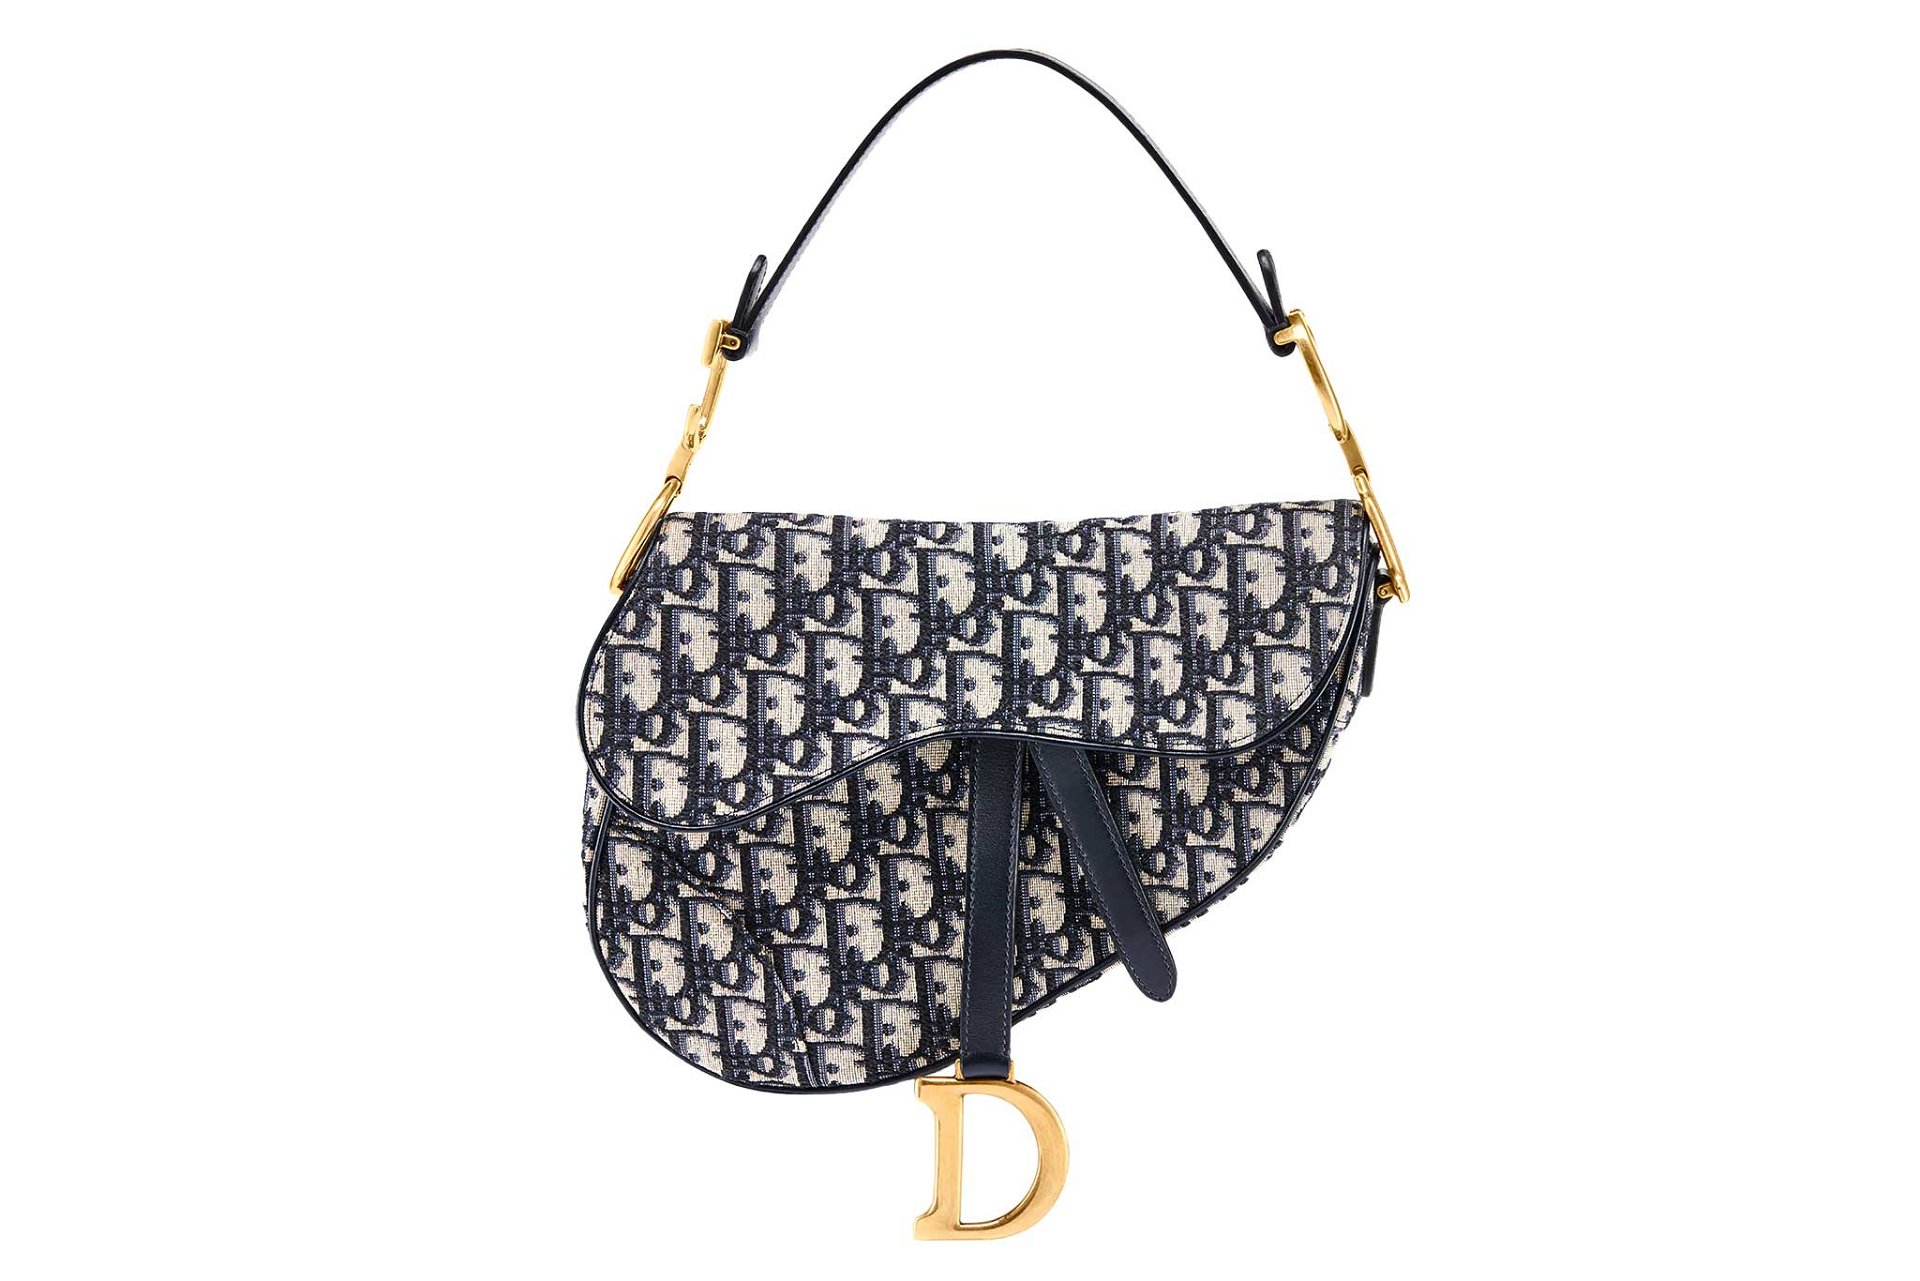 Die Saddle Bag von Dior wurde 2018 einem erfolgreichen Re-Design unterzogen. Das gezeigte Oblique-Muster lässt auch Vintage-Modelle wieder an Wert steigen.